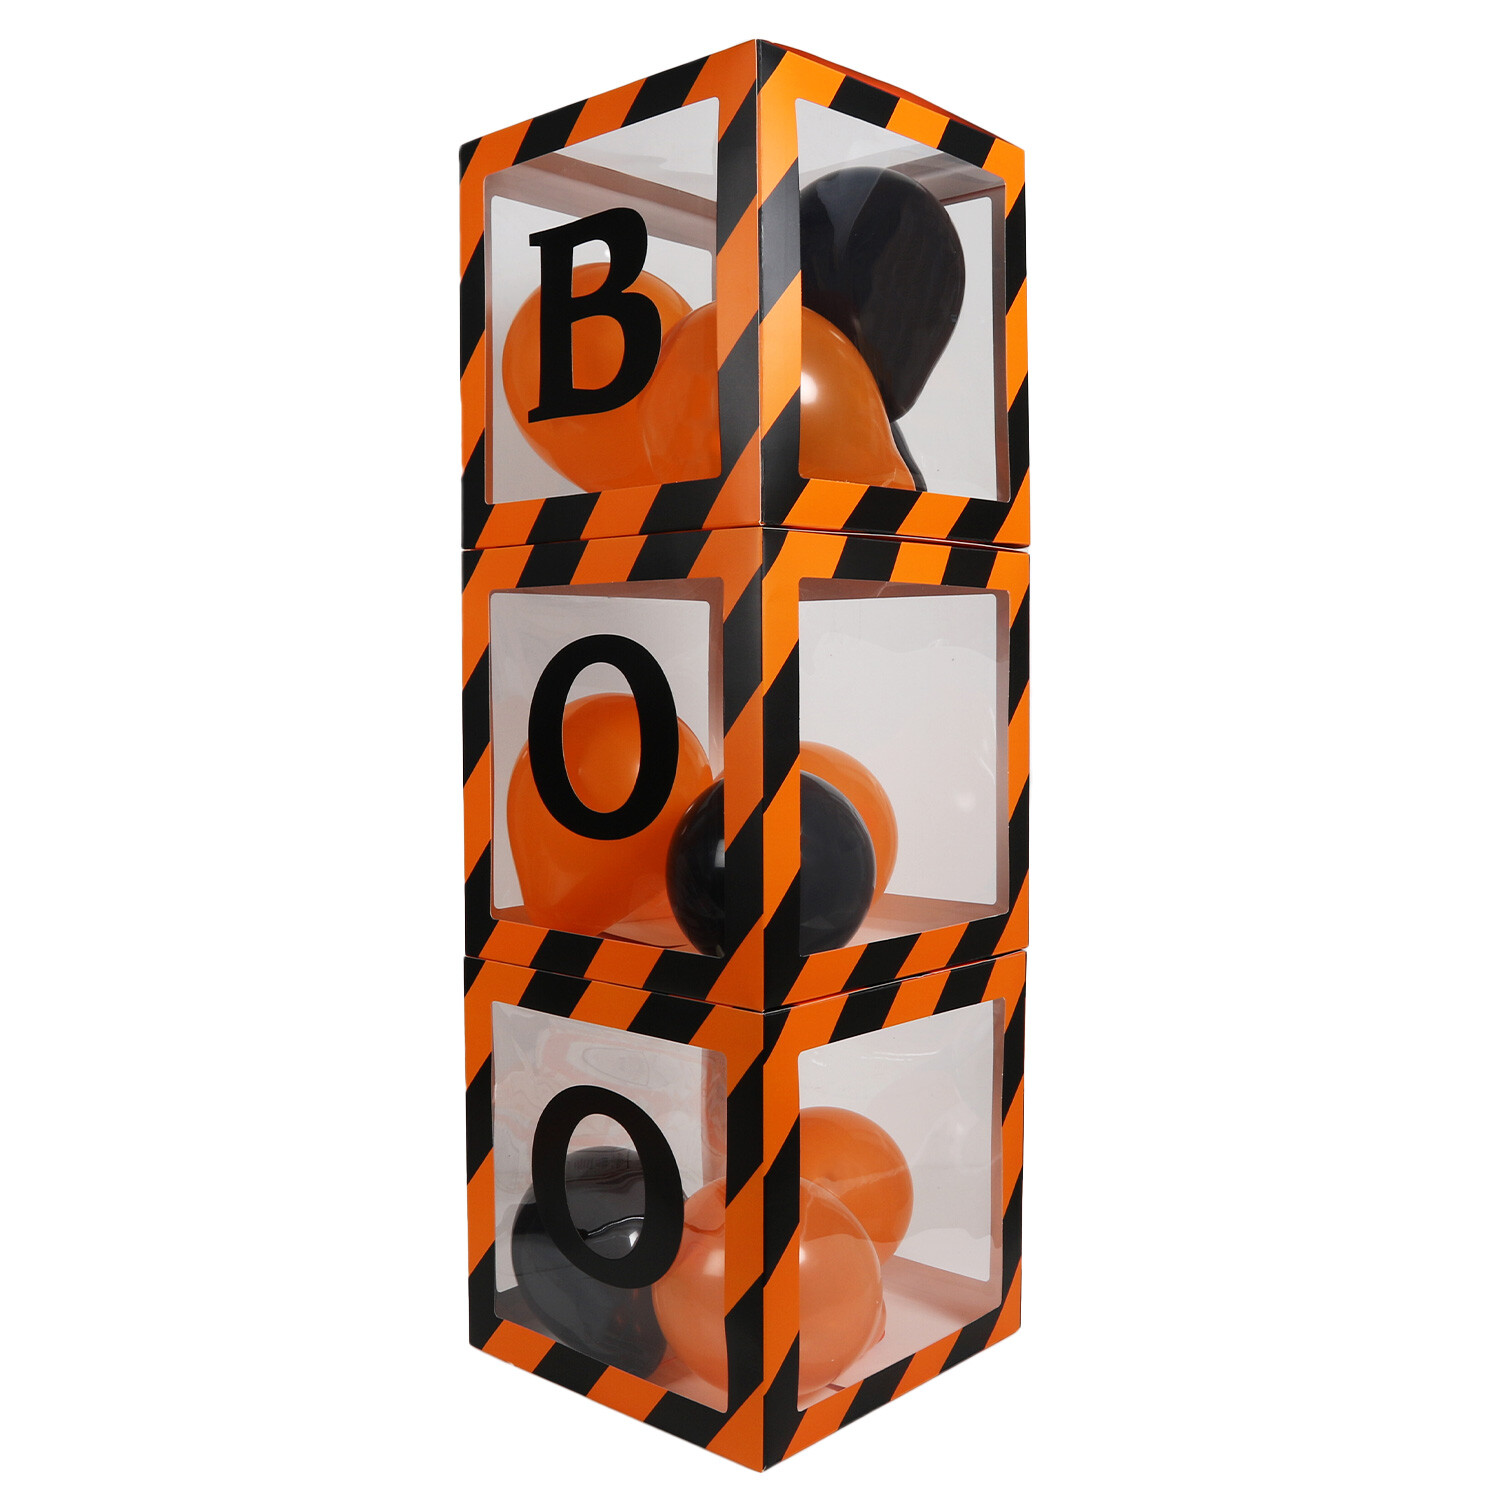 Boo Balloon Boxes - Orange Image 3